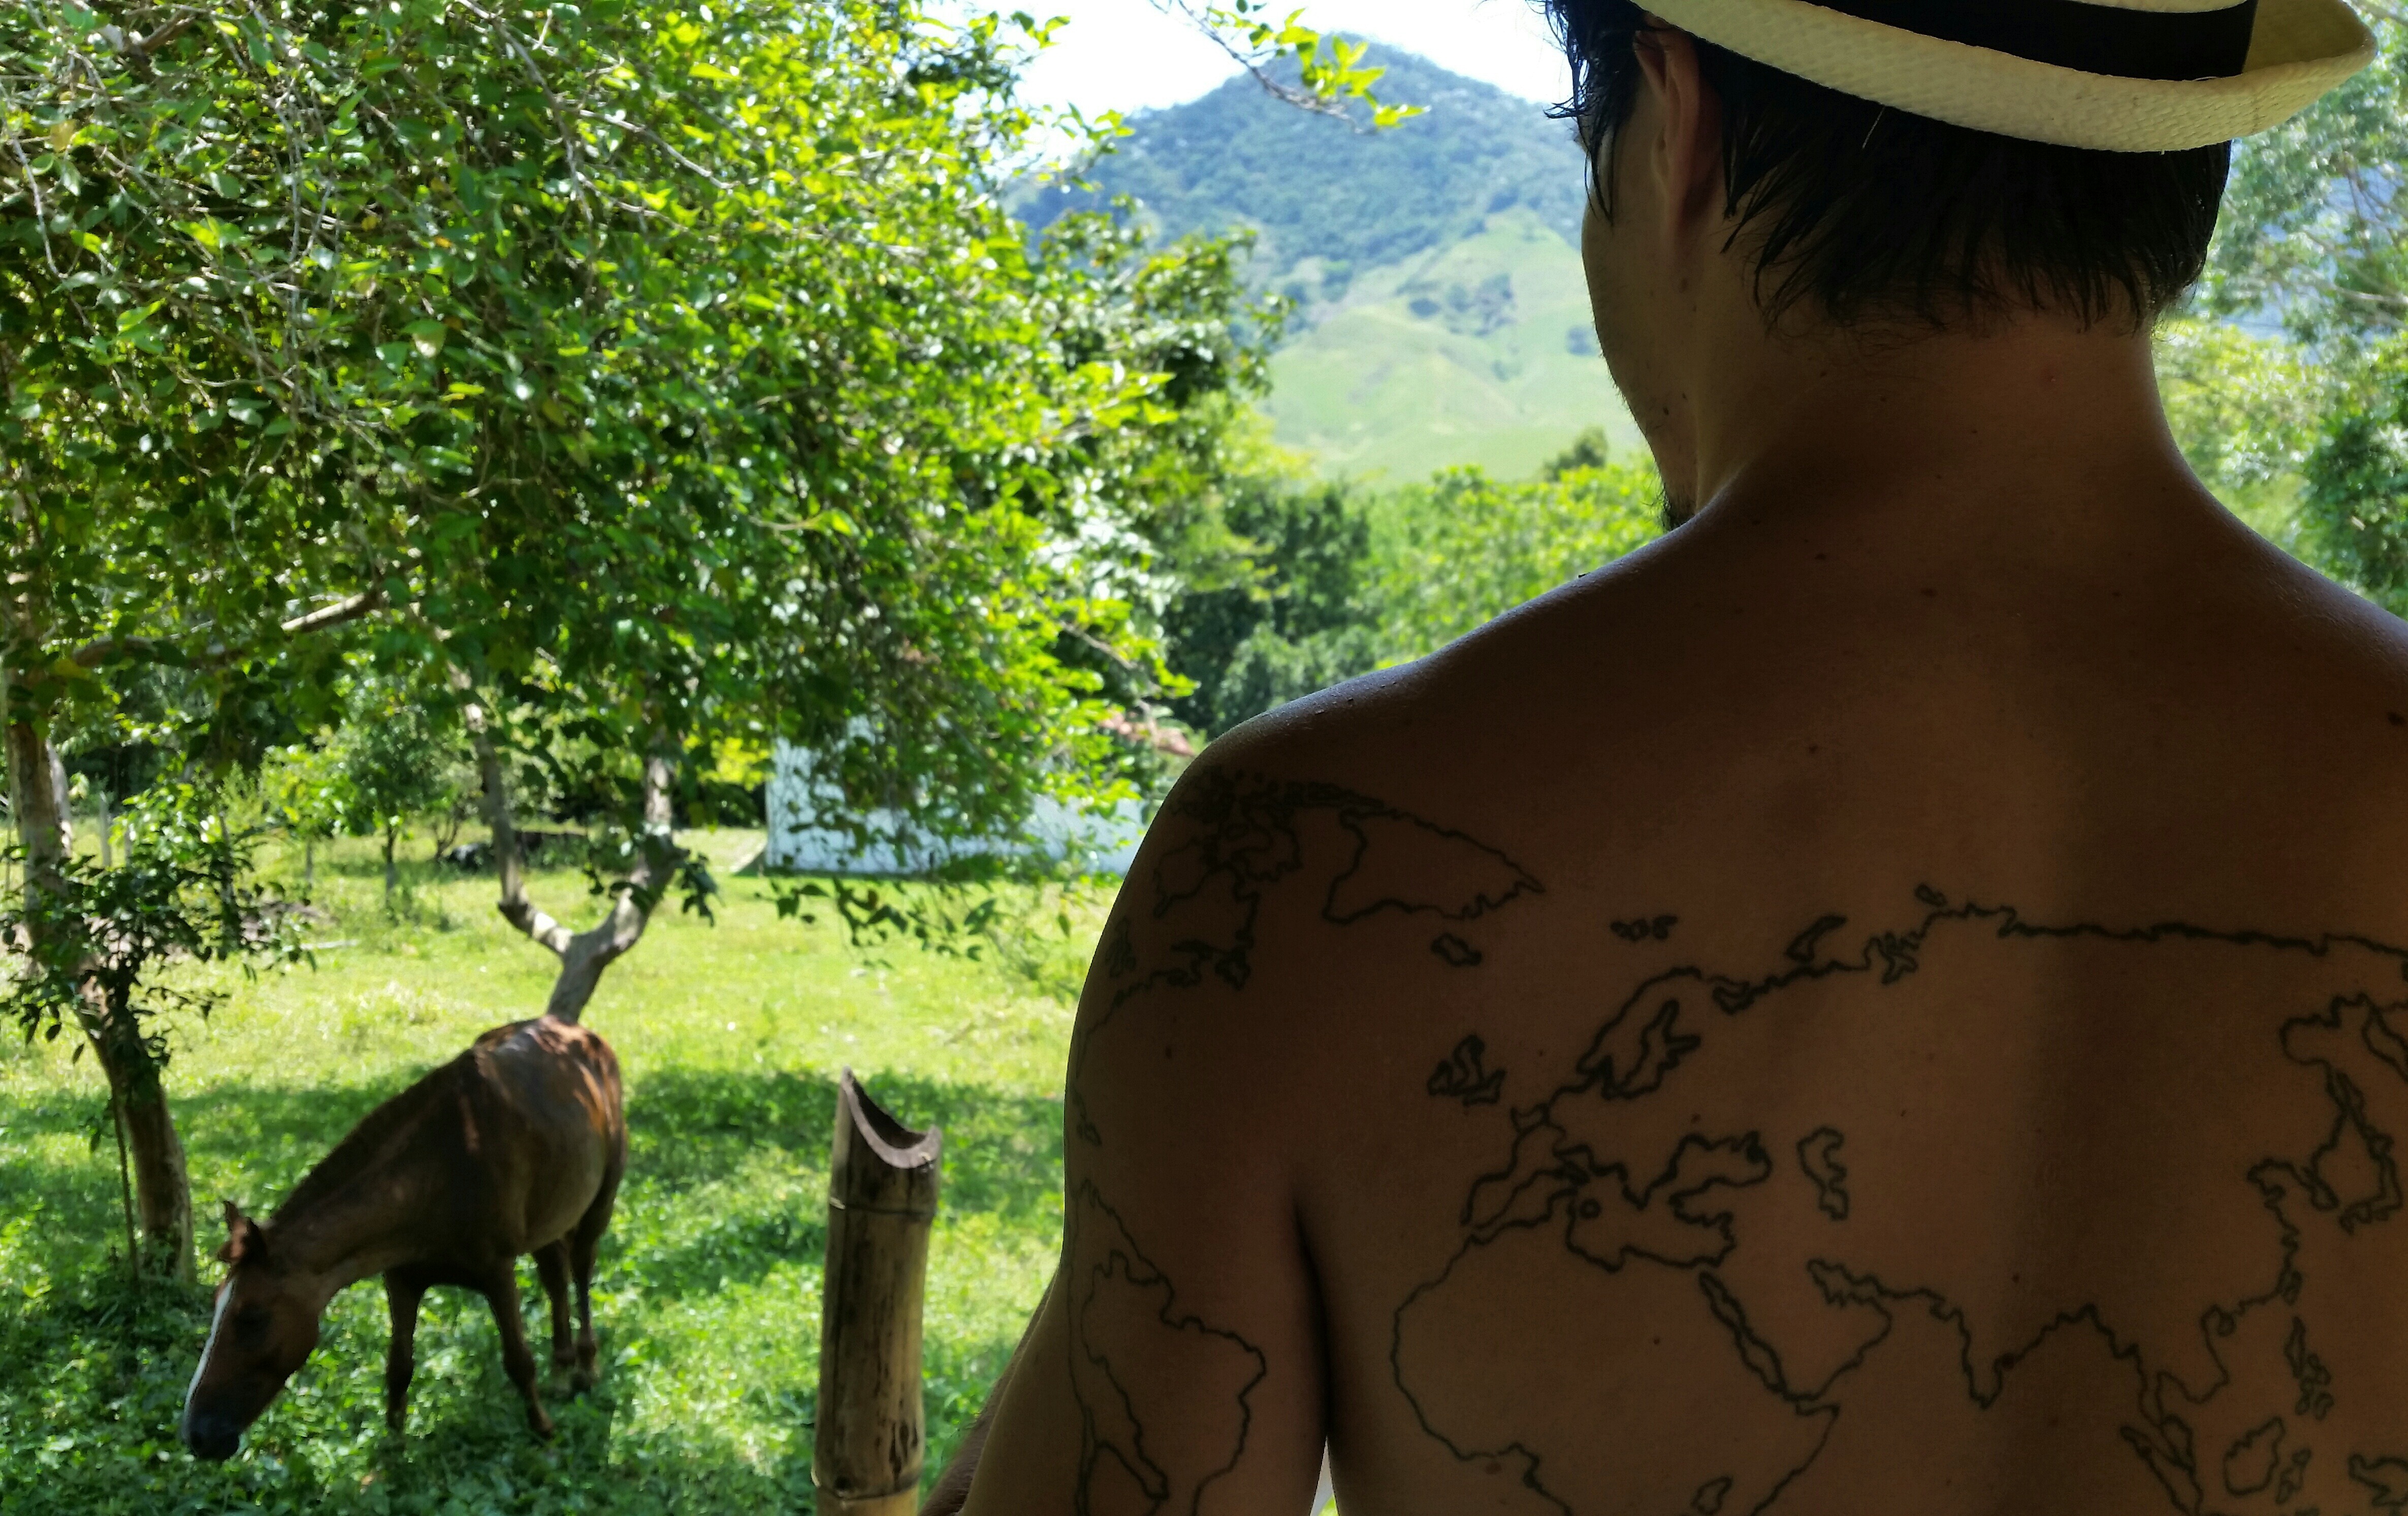 Scenery and world tattoo in Sana, Rio de Janeiro